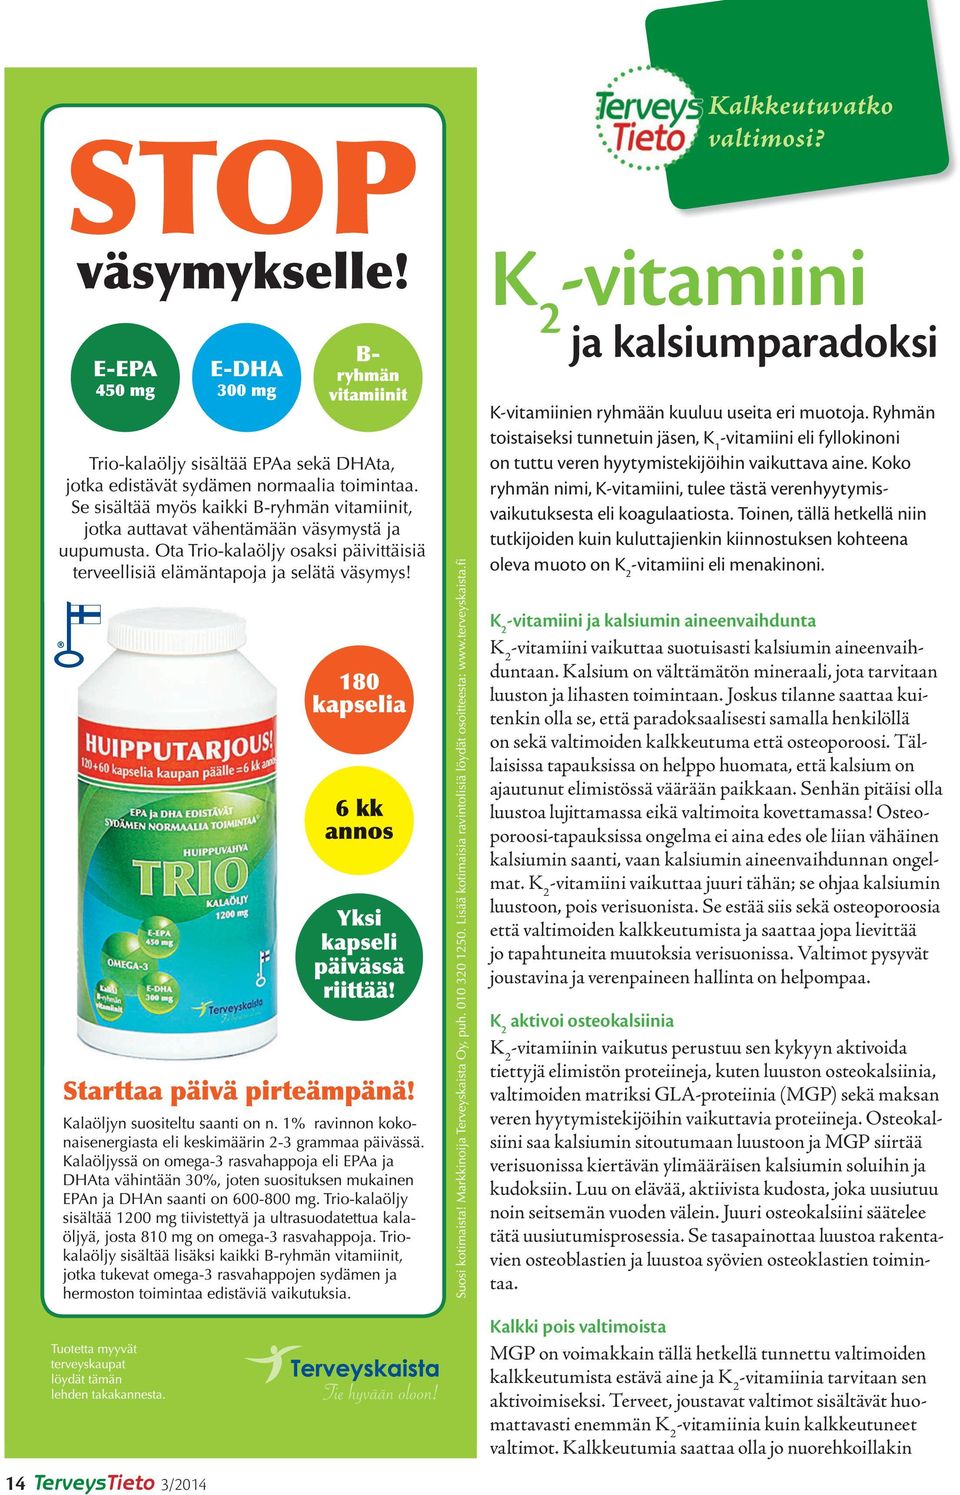 Koko ryhmän nimi, K-vitamiini, tulee tästä verenhyytymisvaikutuksesta eli koagulaatiosta.